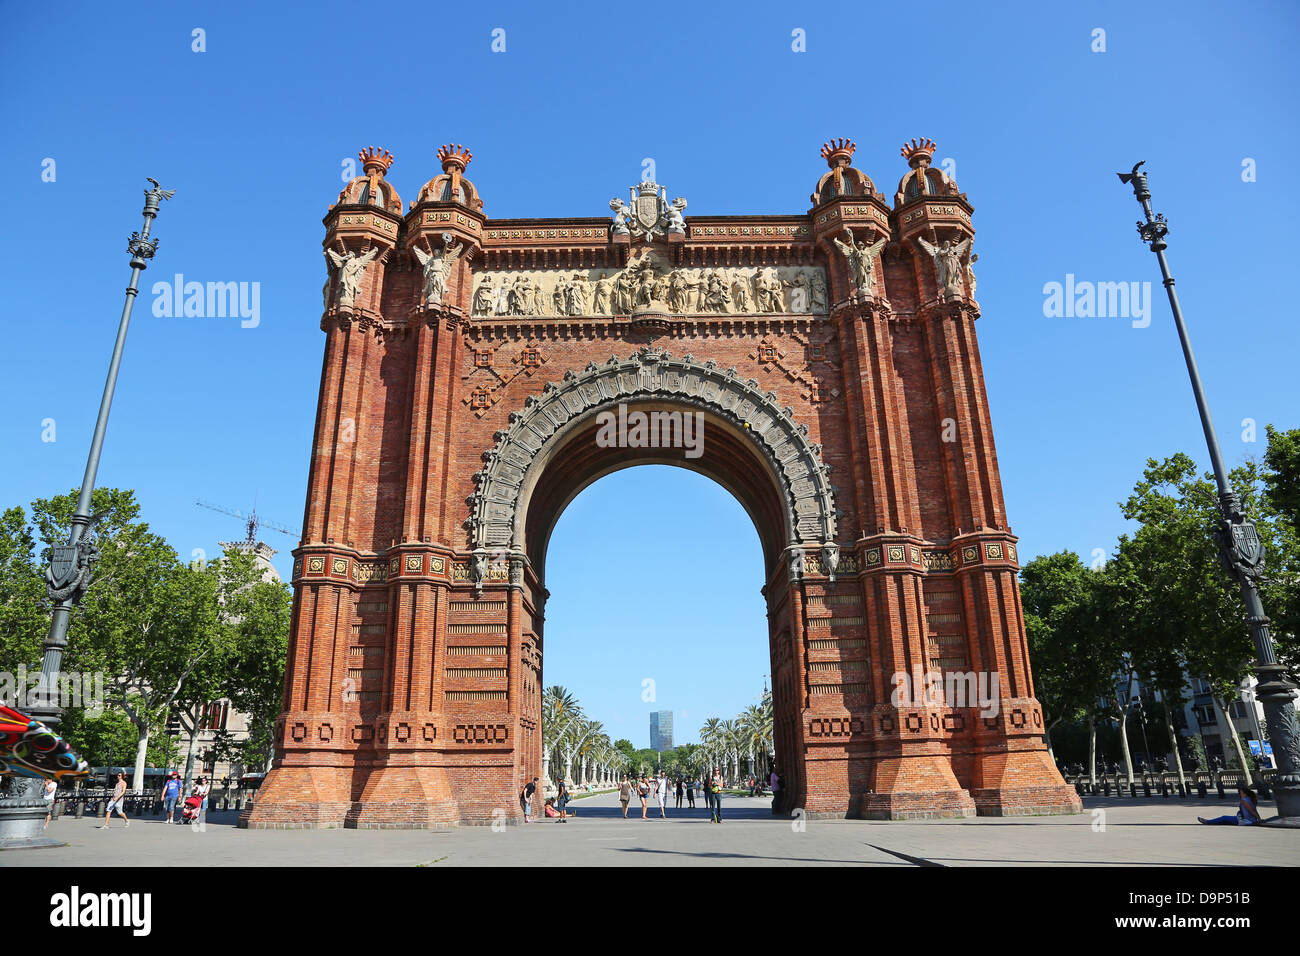 Arc de Triomf arch in Barcelona, Spain Stock Photo